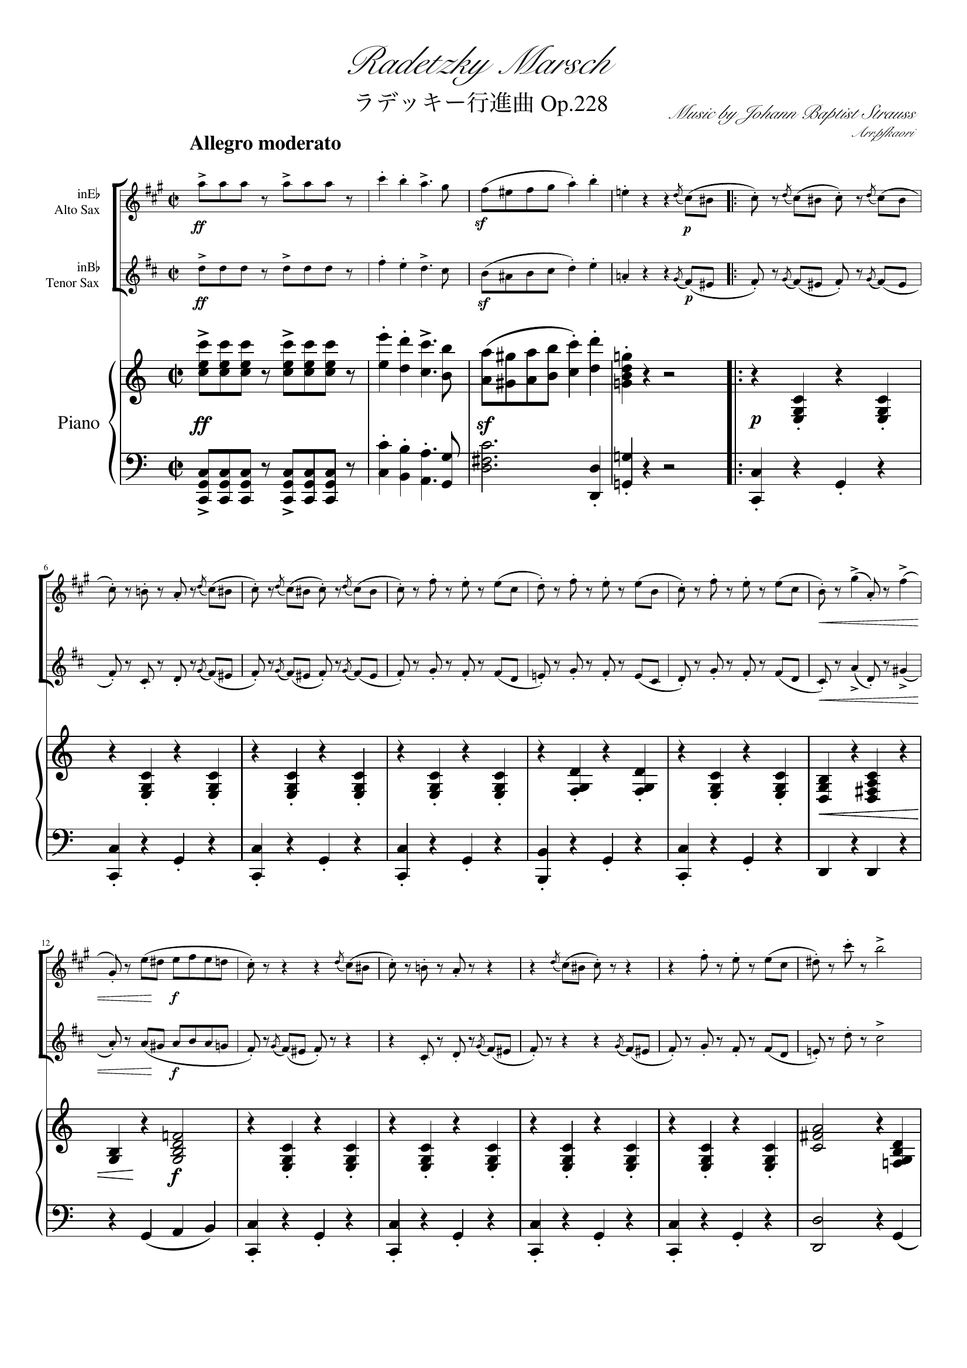 ヨハンシュトラウス1世 - ラデッキー行進曲 (C・ピアノトリオ/アルトサックス&テナーサックス) by pfkaori